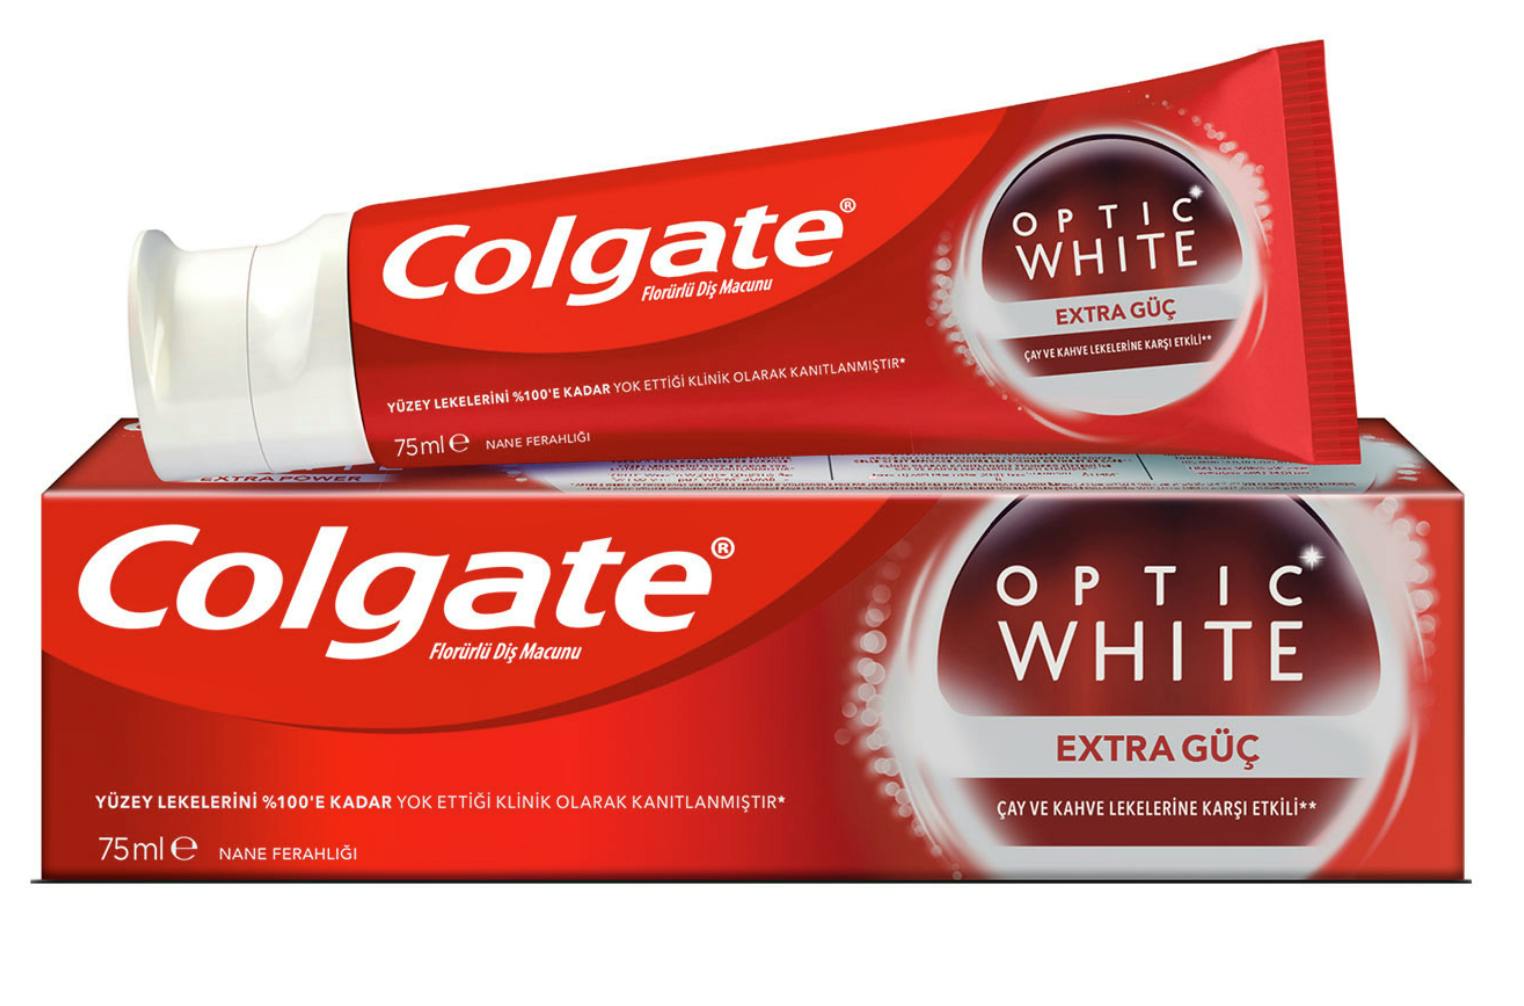 Optic White Toothpaste 75 ml - 15.95 kr